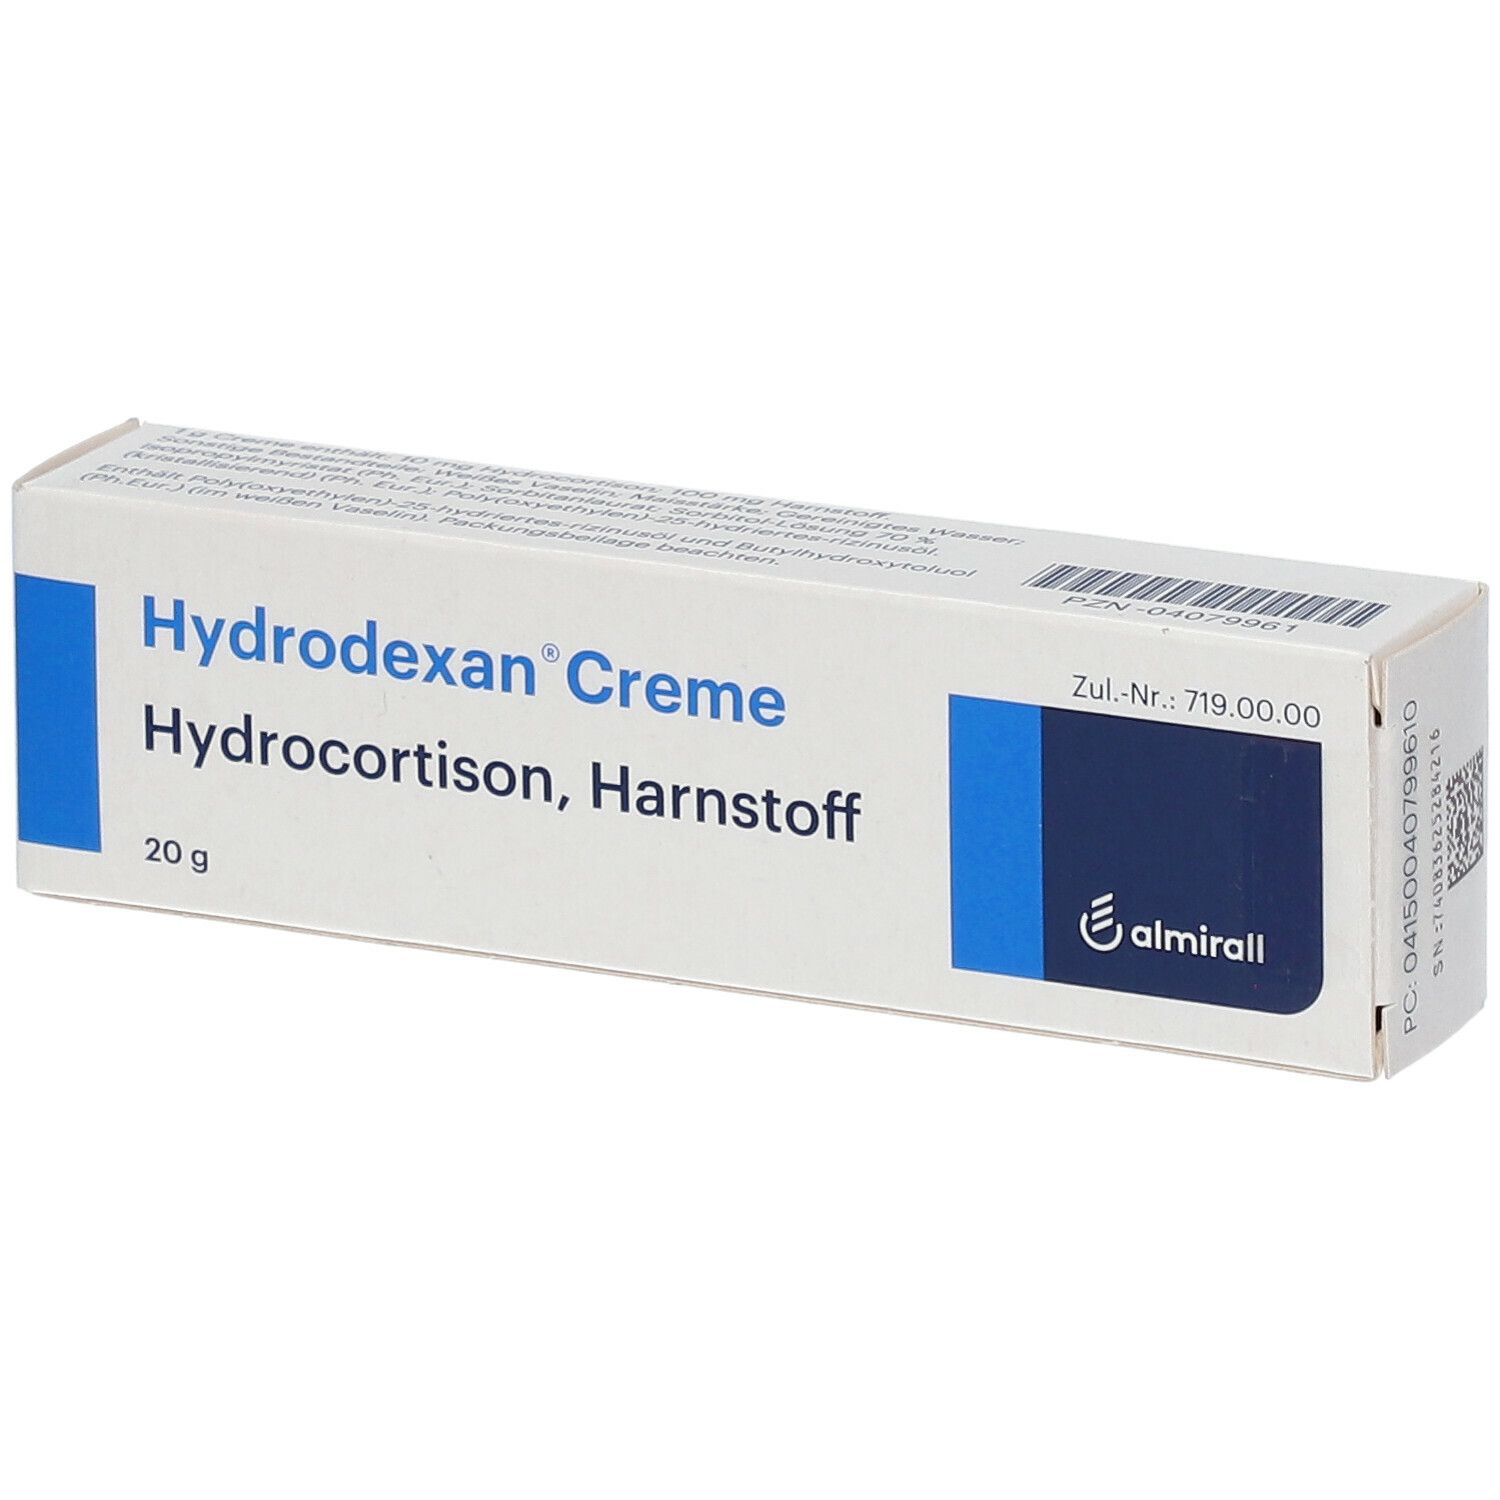 Hydrodexan® Creme